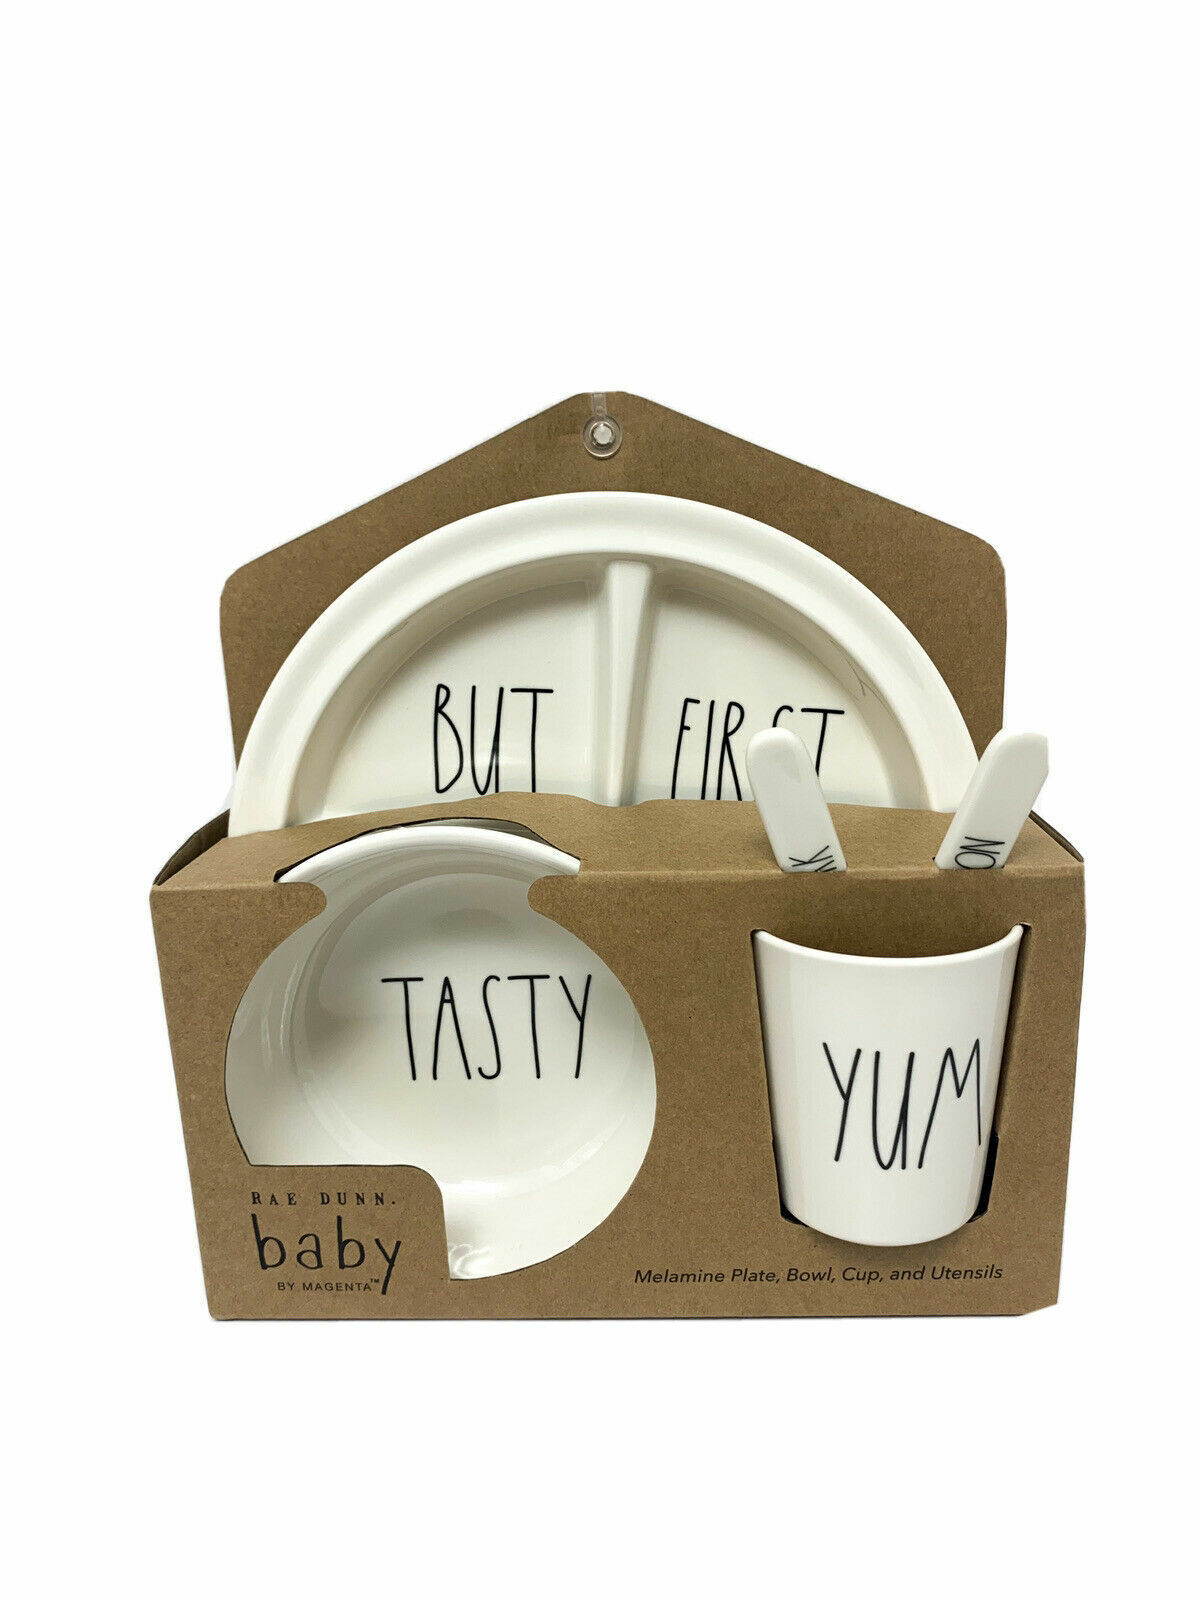 Rae Dunn Baby 5 Piece Gift Set Melamine Plate Bowl & Utensils “yum” “tasty” New